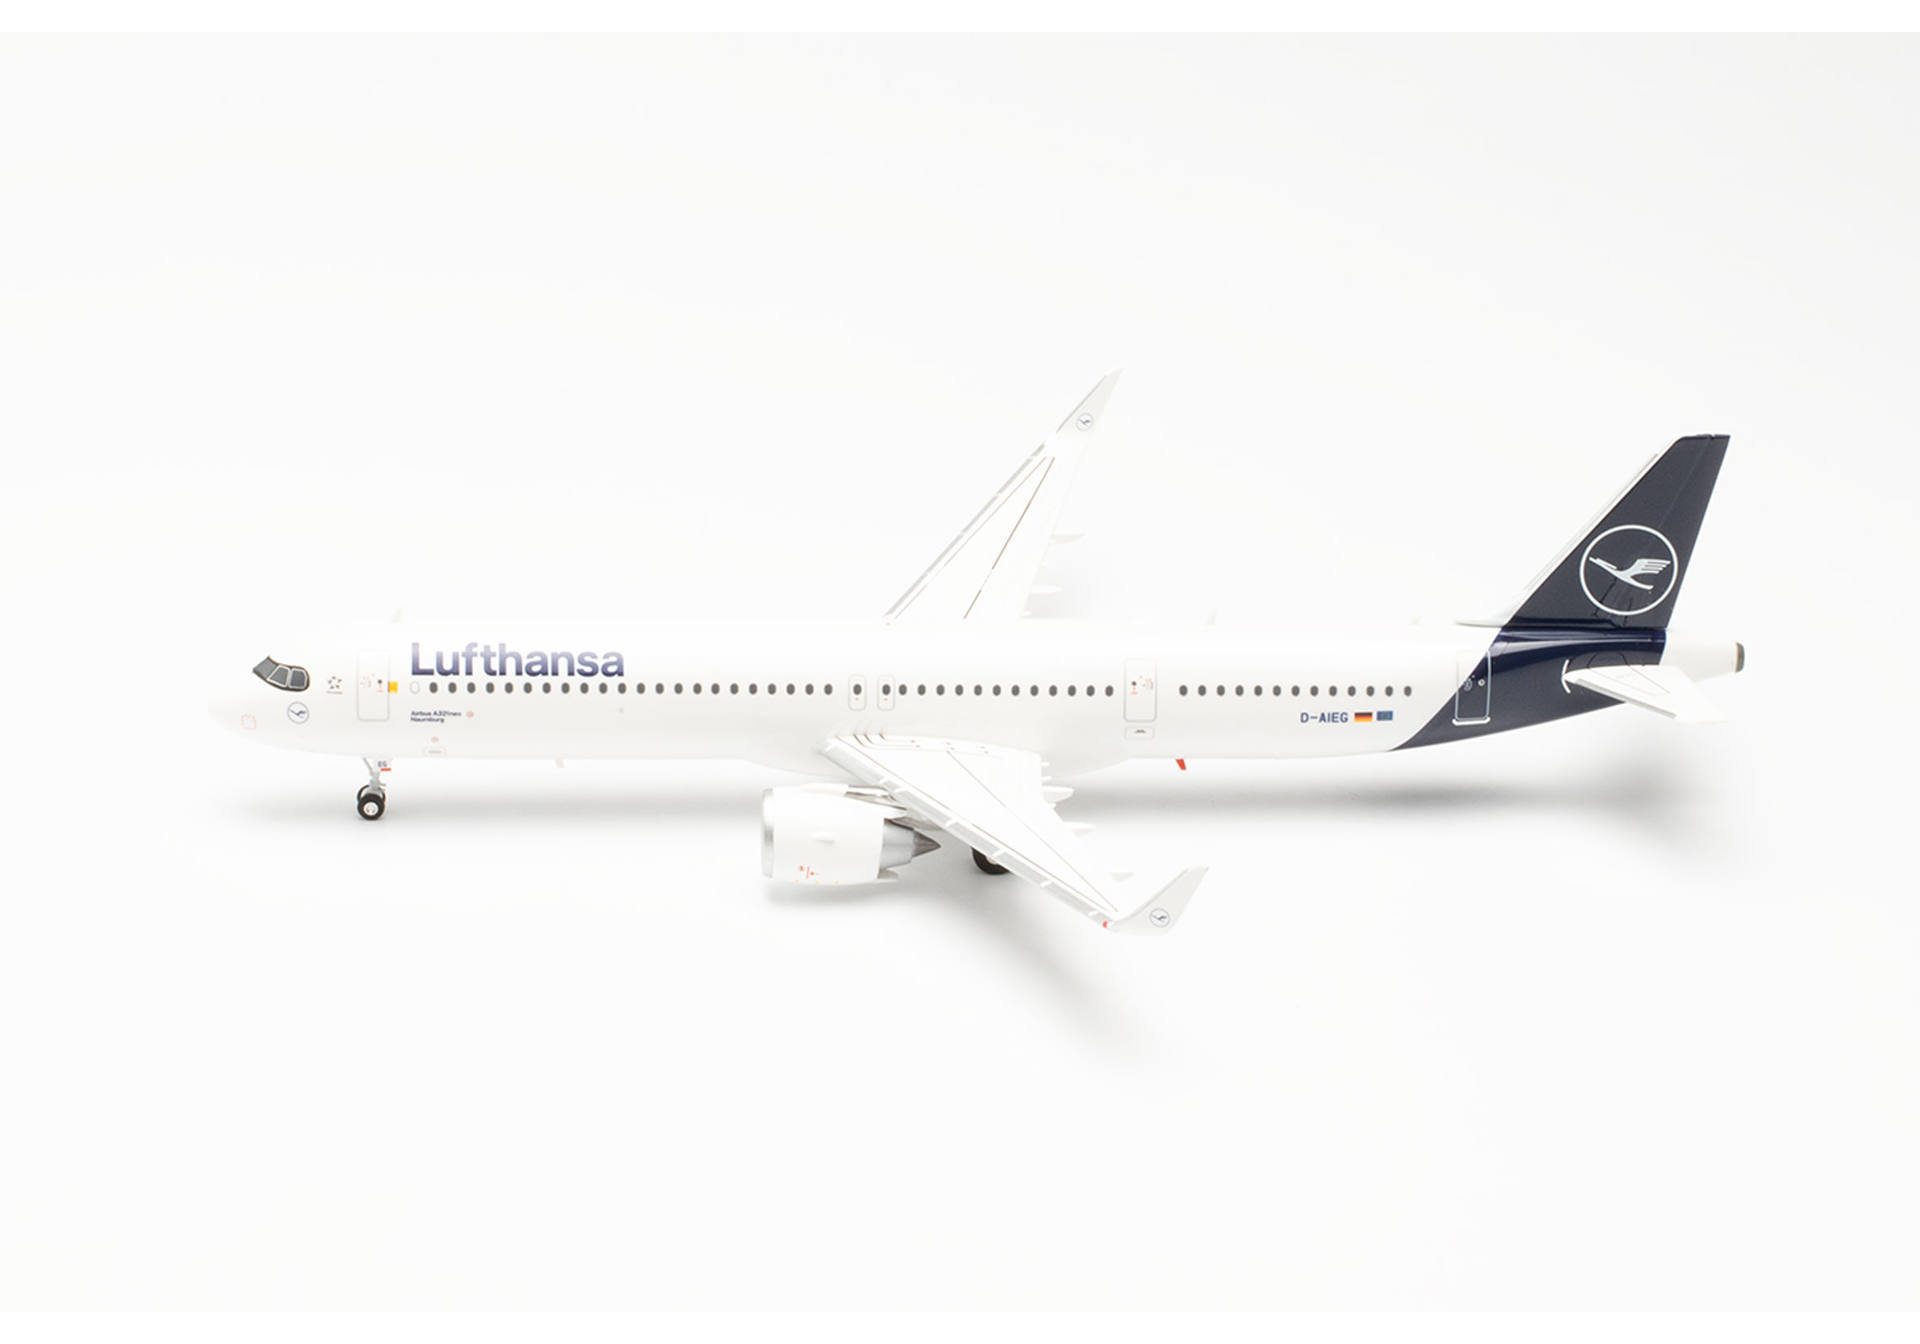 Lufthansa Airbus A321neo – D-AIEG “Naumburg”